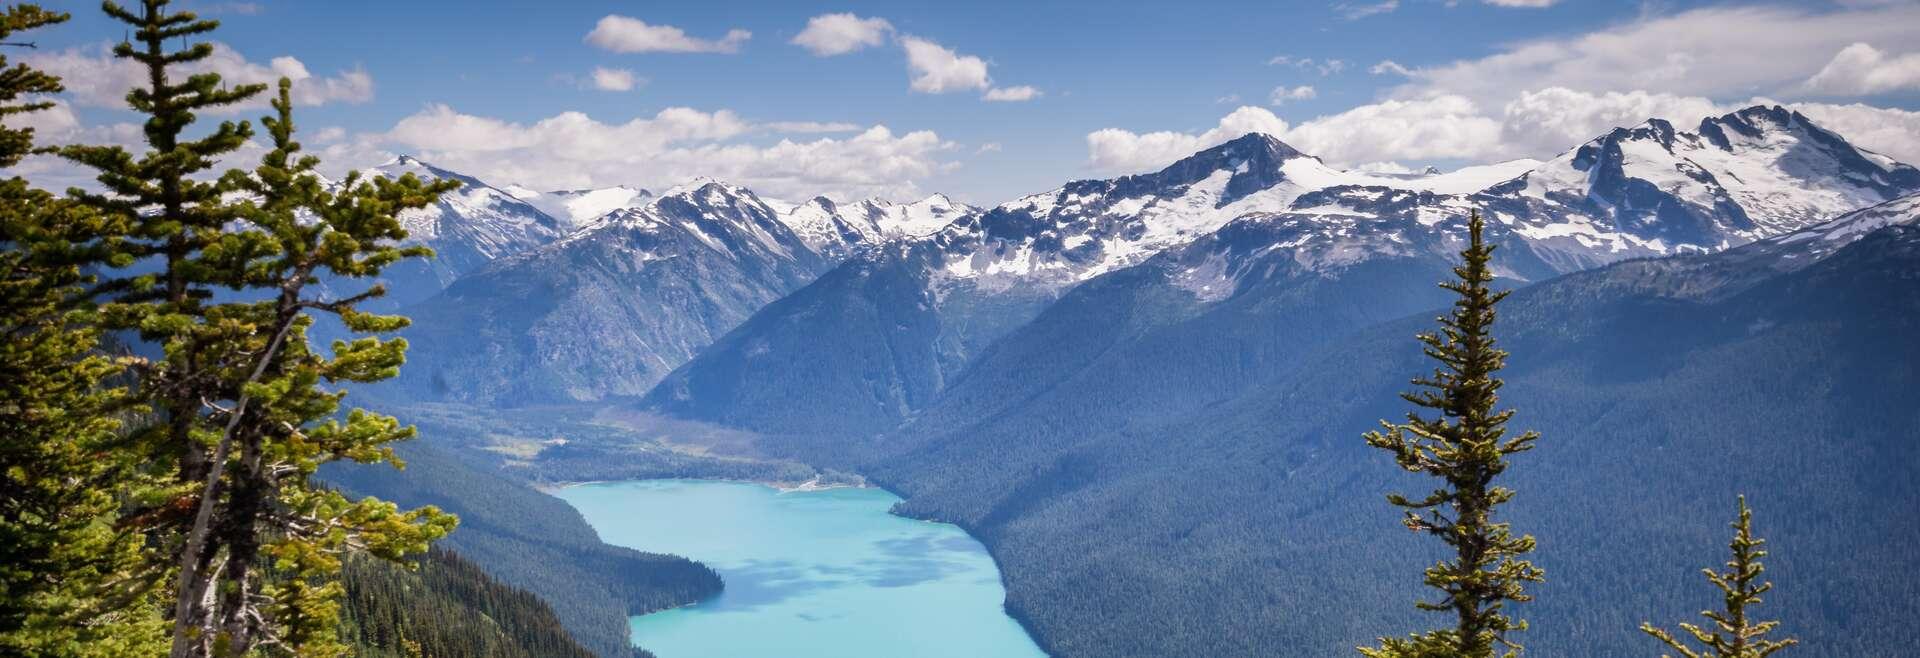 Séjour linguistique Canada, Whistler, Cheakamus lake et riverside